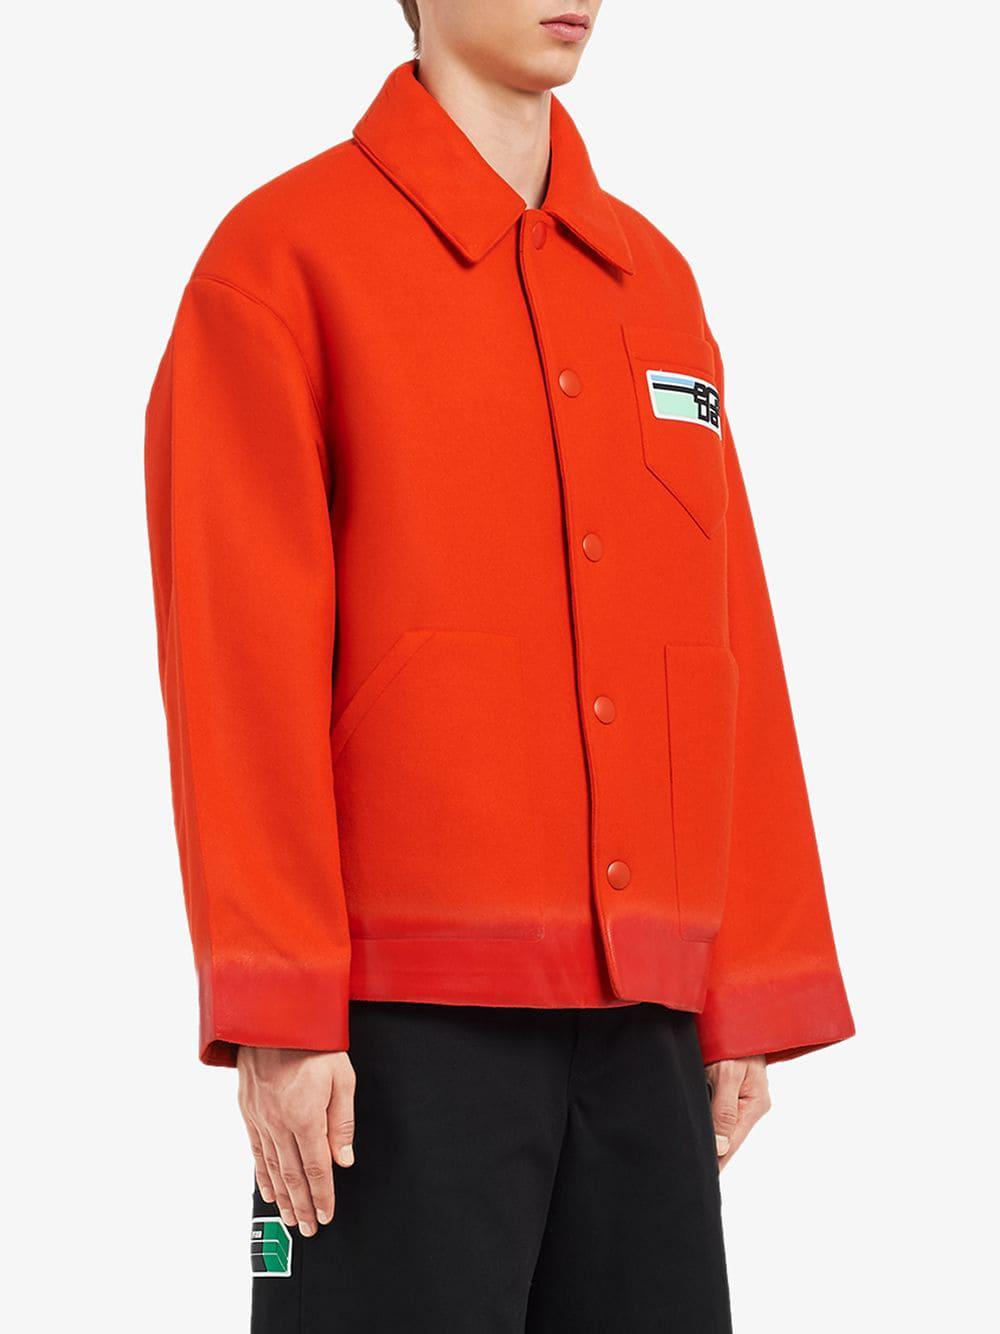 prada jacket orange